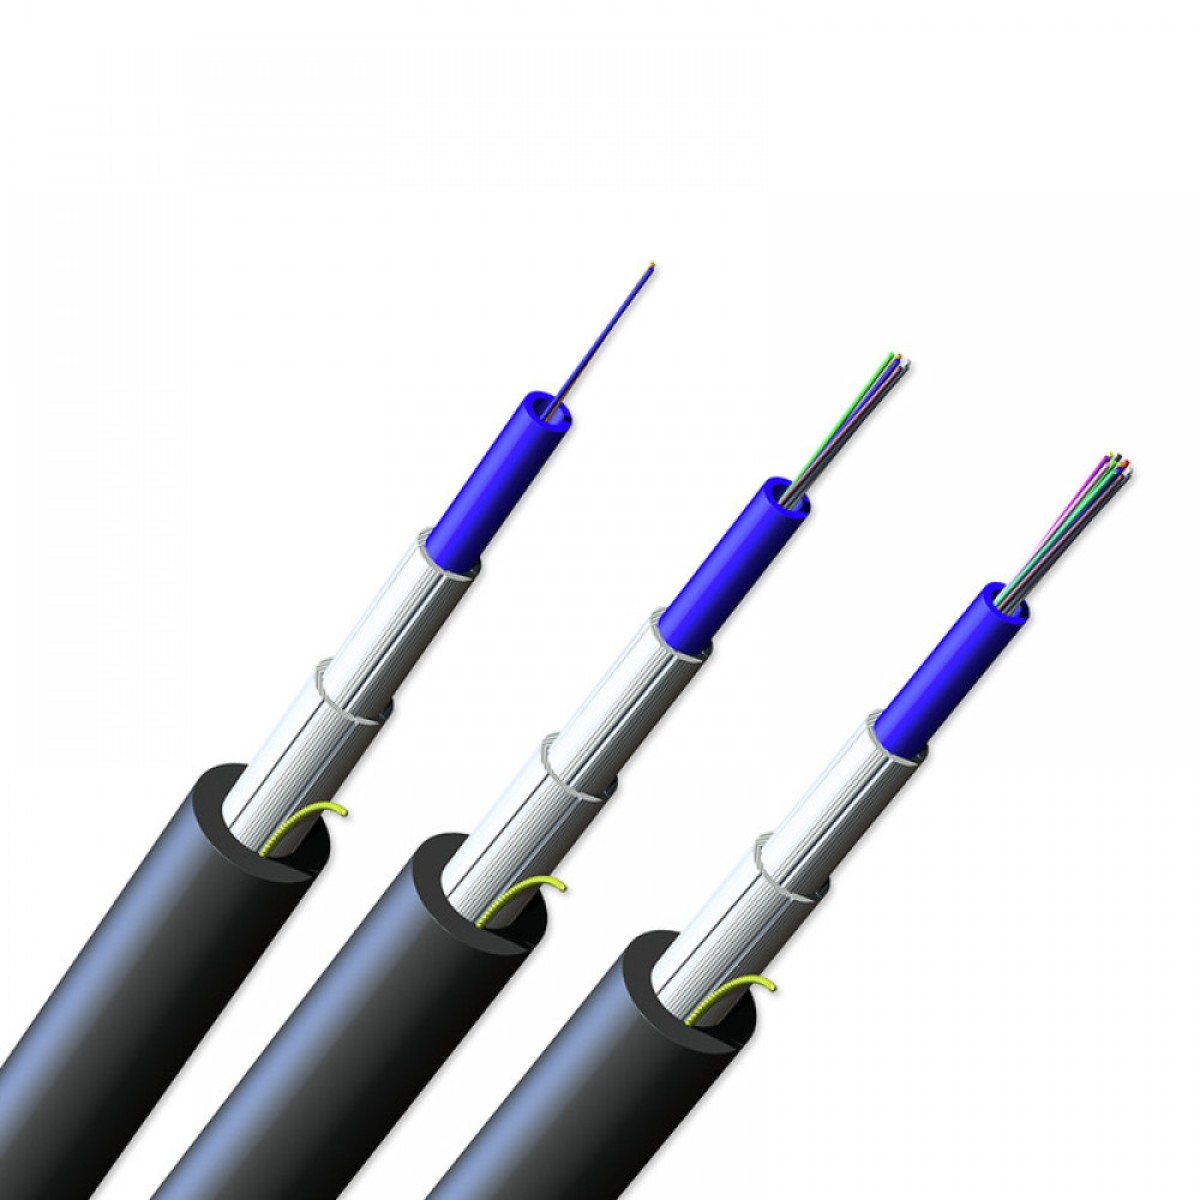 ВО кабель універсальний, U-BQ(ZN)BH 1x12 OM4 CT2.5, ClearCurve, монотуб, діелектричний захист, LSZH/FRNC (B2ca), FREEDM Gel-Free, Corning (012TEU-23198D2C) 256_256.jpg